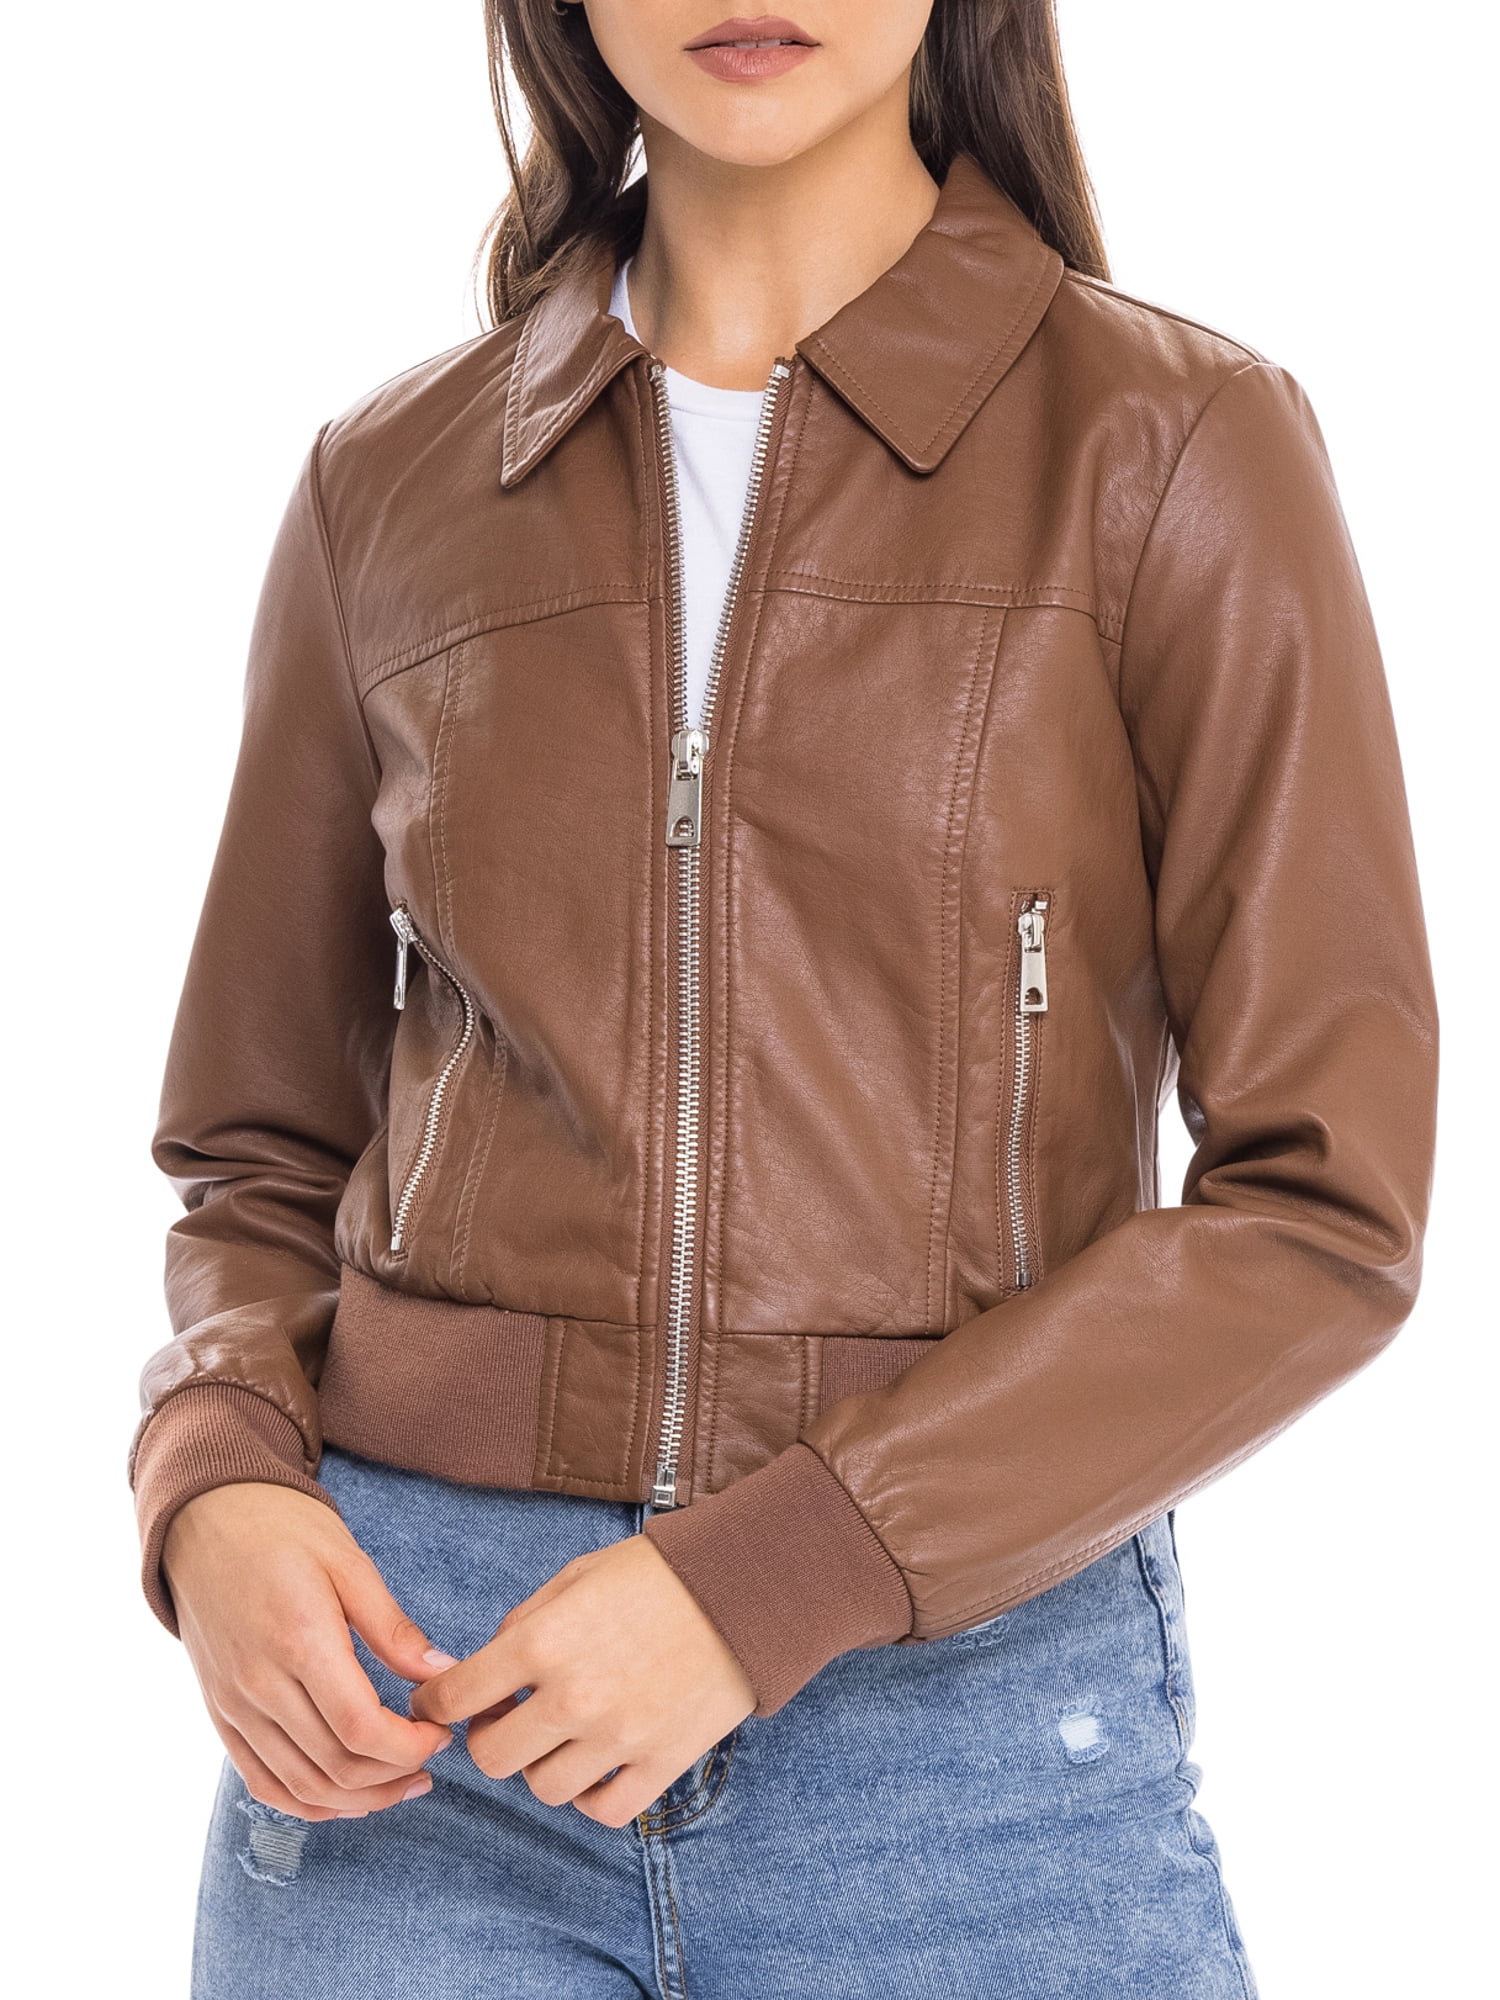 OTW Men Zip Front Stand Collar Slim Solid Luxury Faux Leather Moto Jacket Coat 